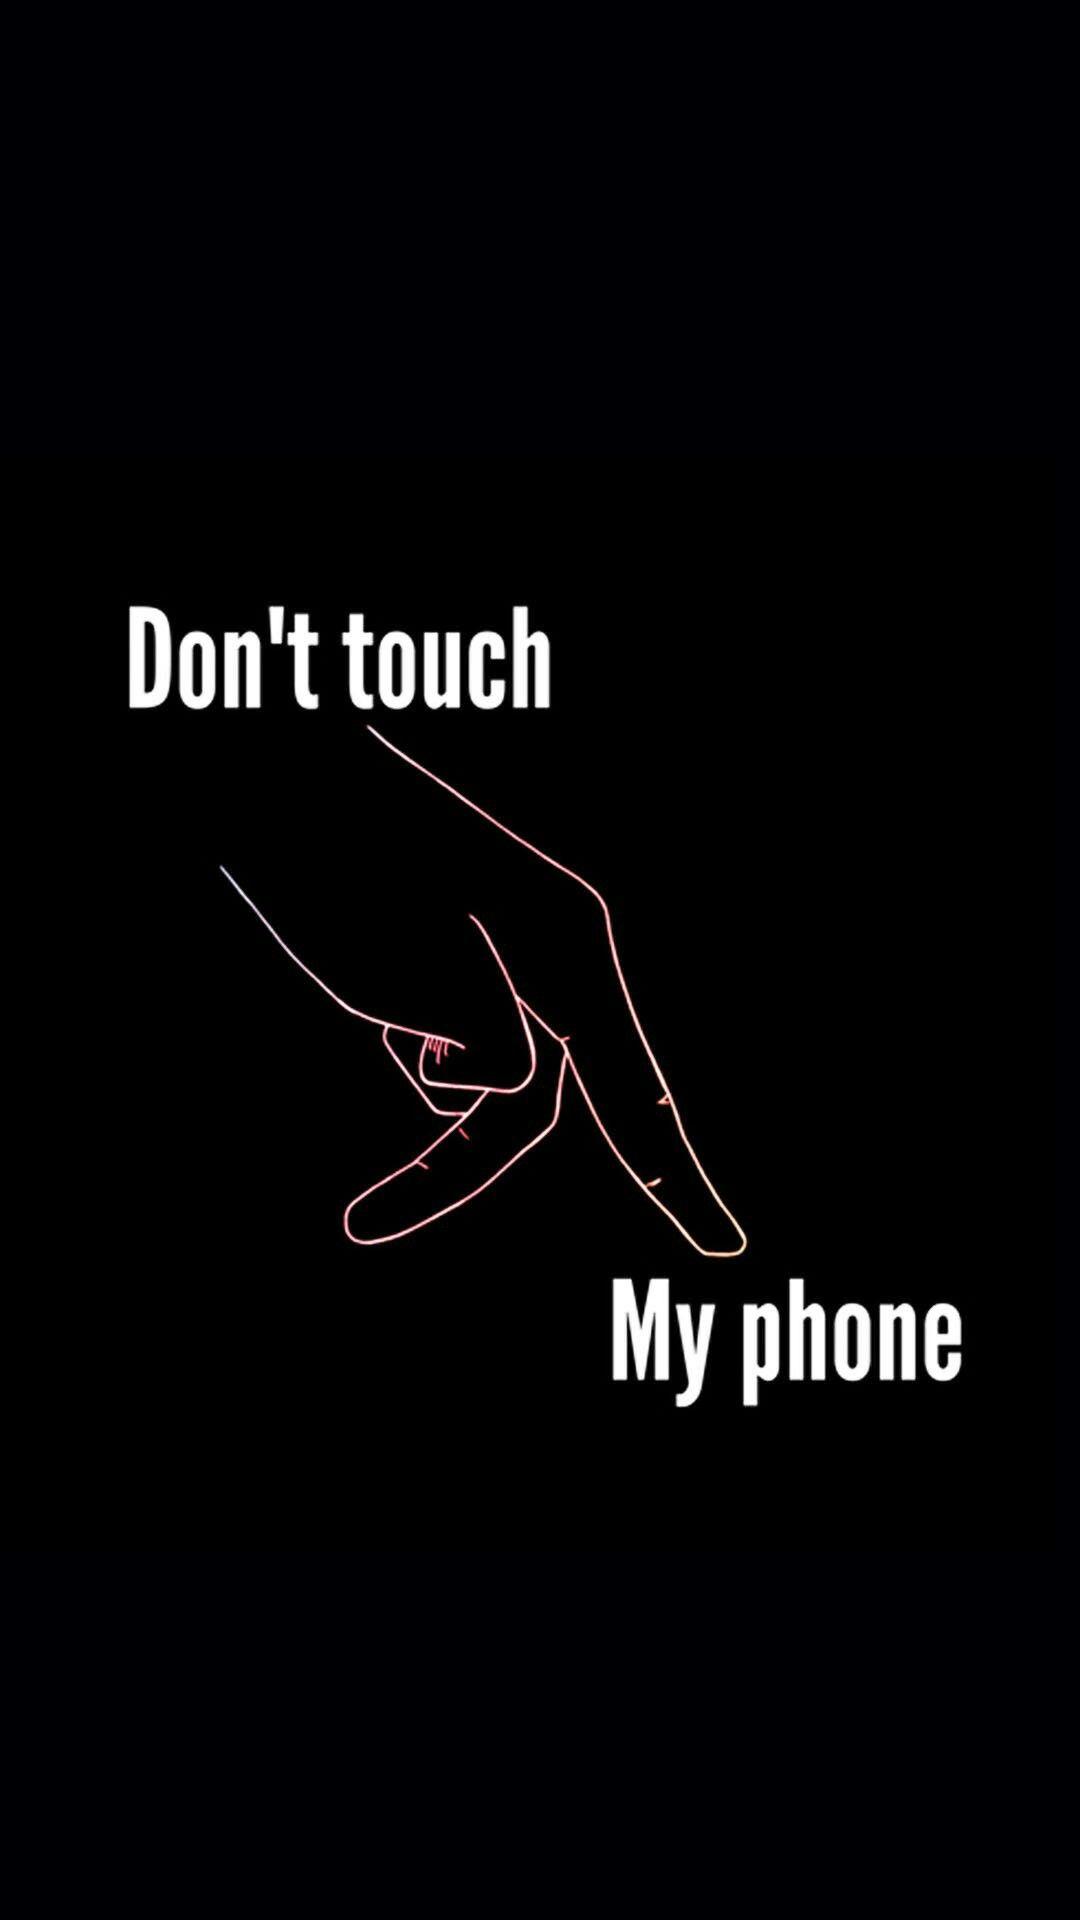 Don't Touch My Phone Wallpaper. Kata Kata Indah, Wallpaper Lucu